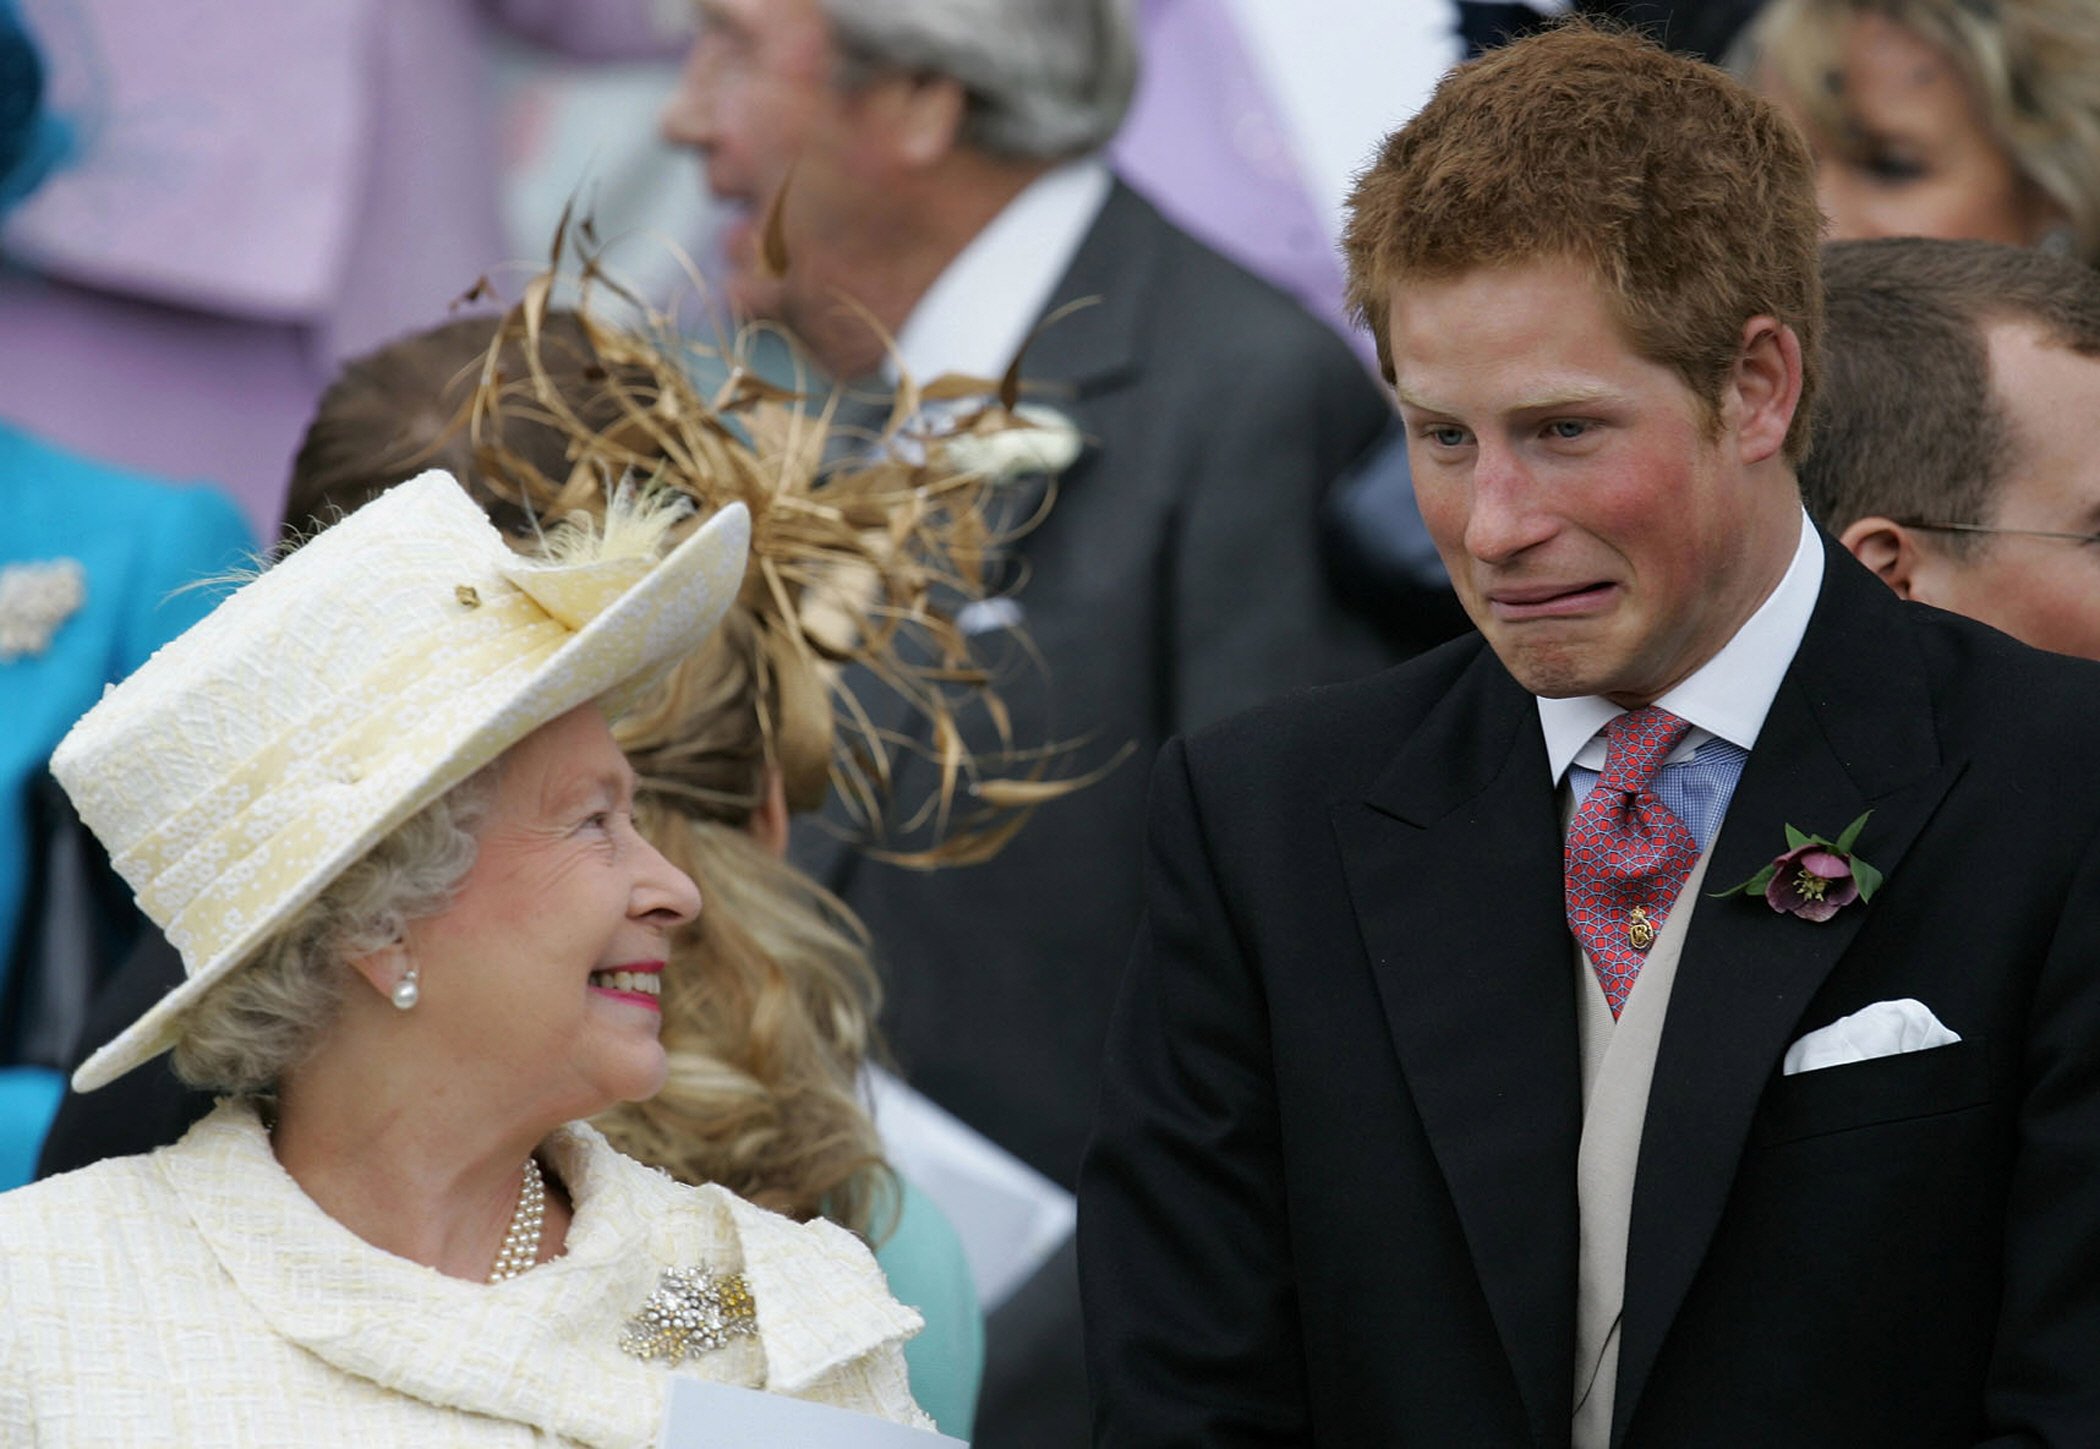 Königin Elizabeth II. und ihr Enkel Prinz Harry sehen zu, wie Prinz Charles und Camilla, Herzogin von Cornwall, nach ihrem Ehesegen am 9. April 2005 in Windsor, Großbritannien, die St. George's Chapel verlassen┃Quelle: Getty Images